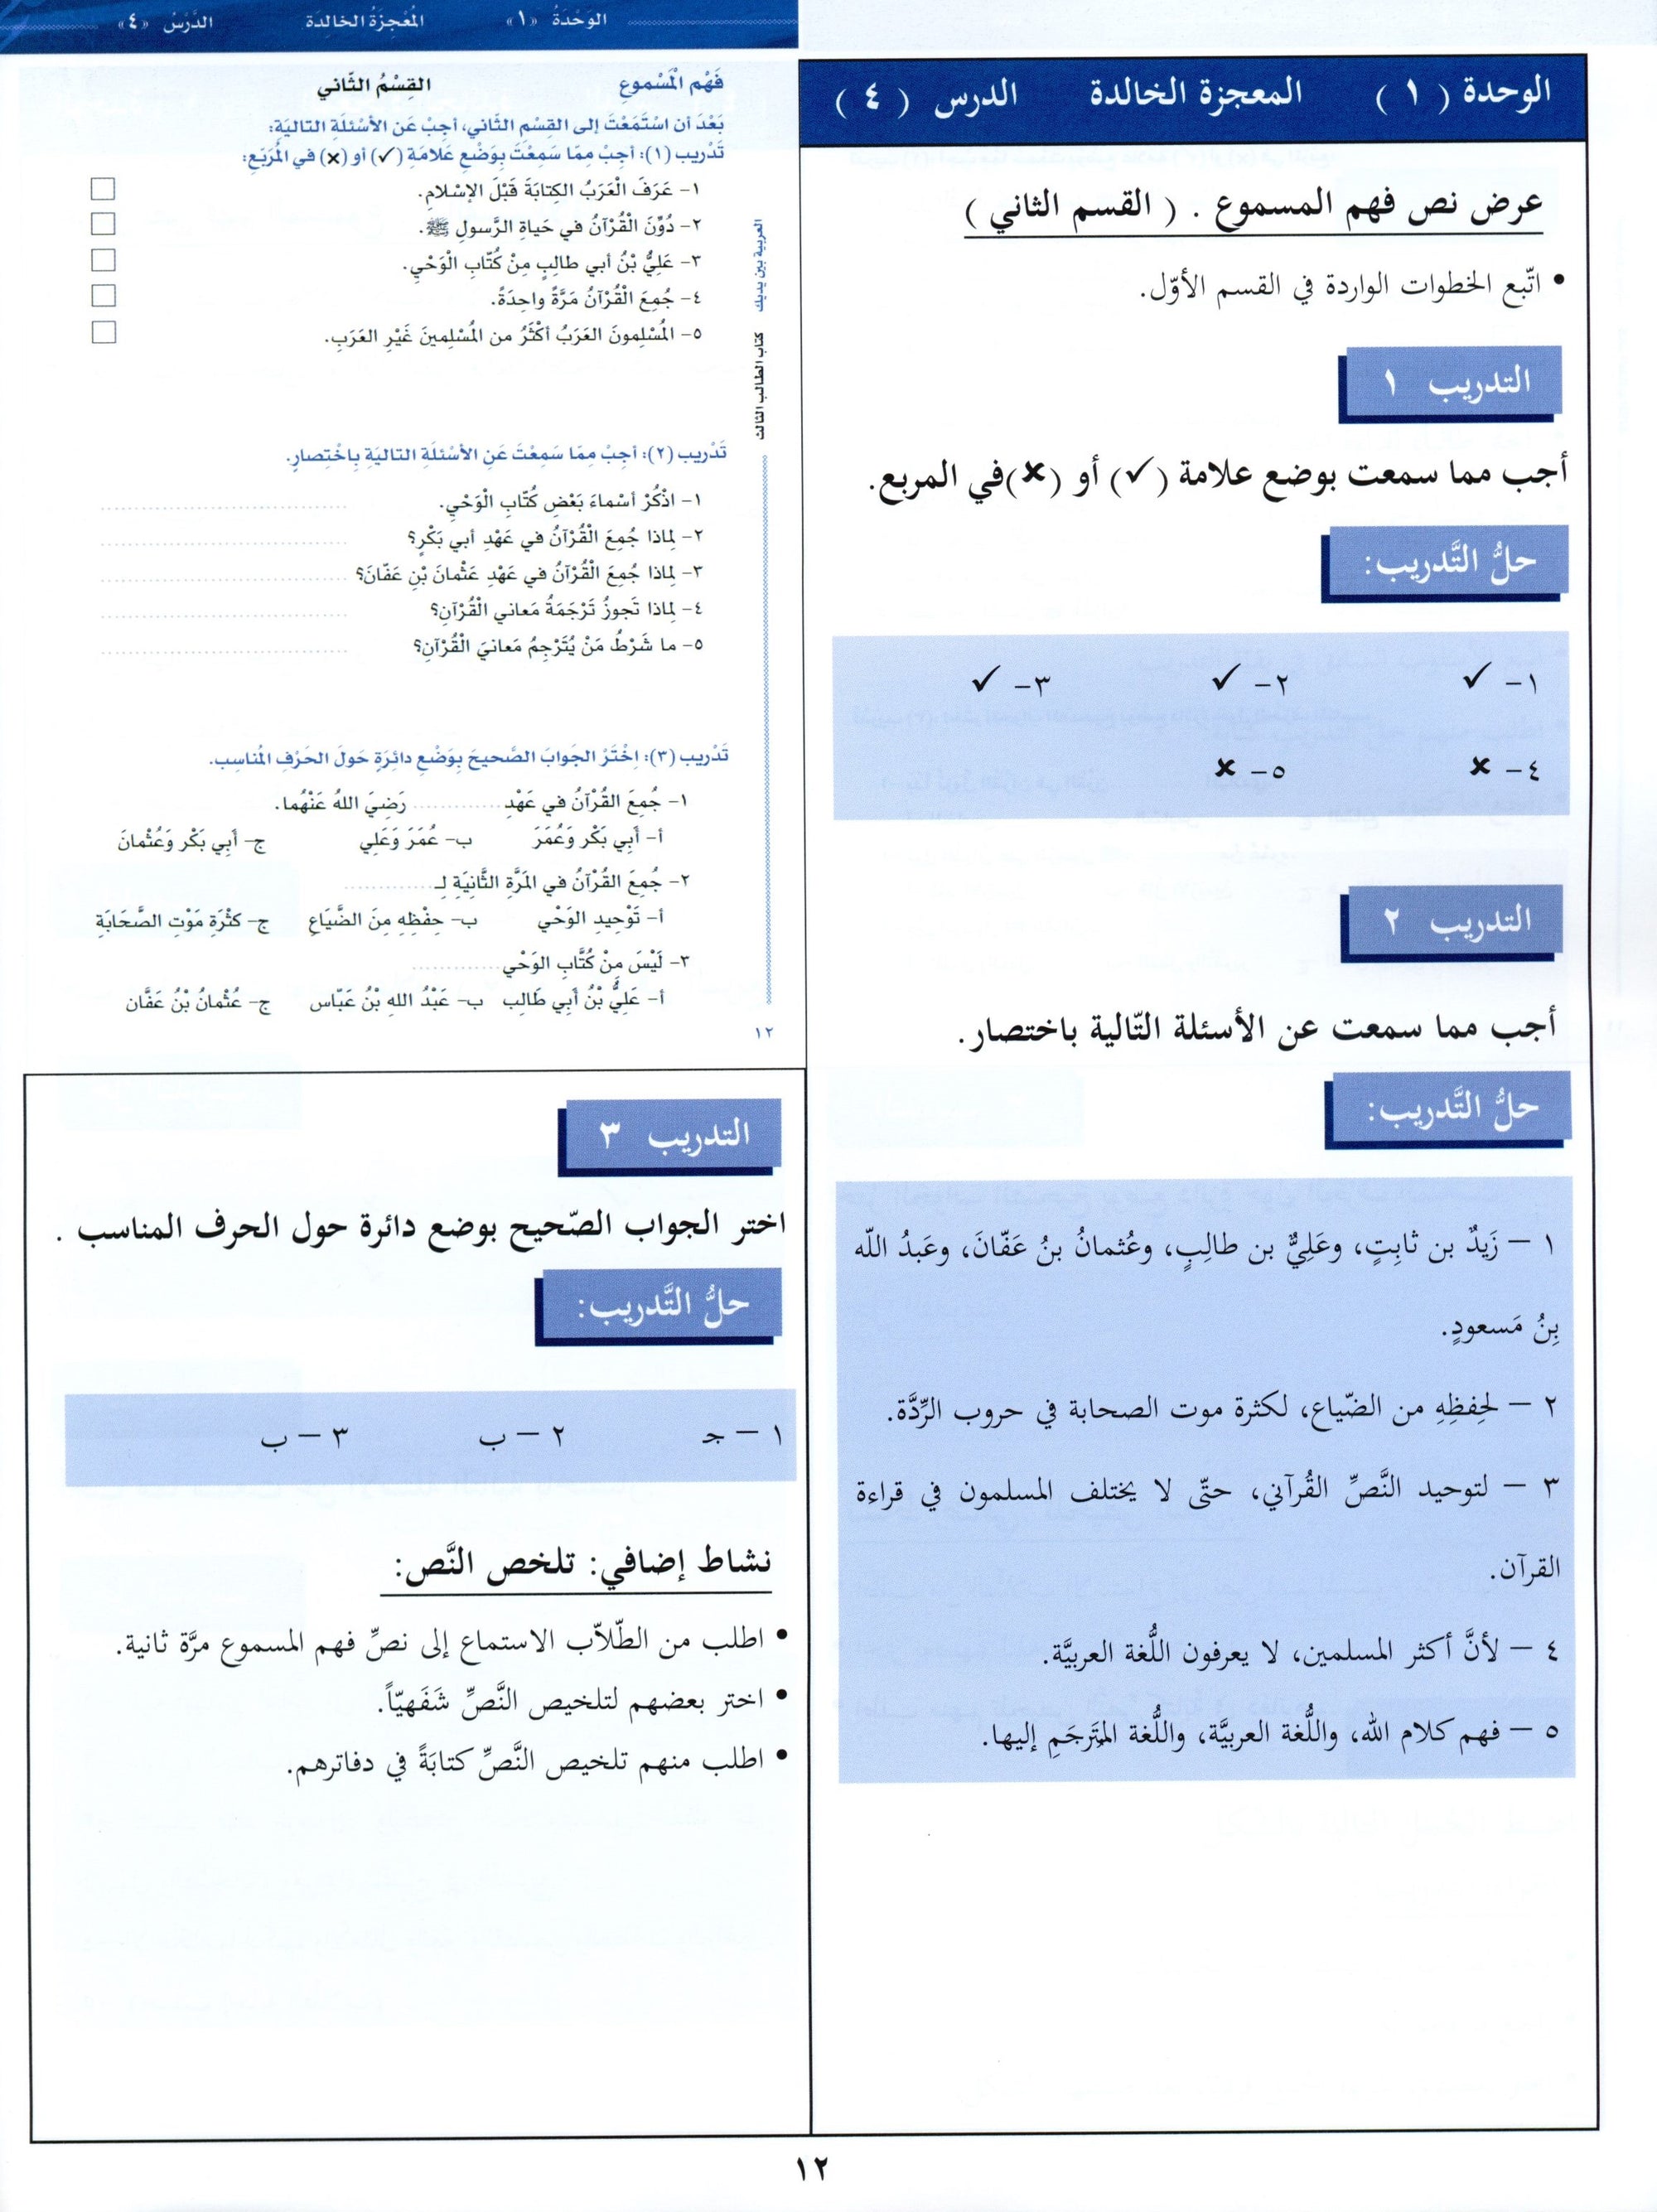 Arabic Between Your Hands Teacher Book Level 3 العربية بين يديك